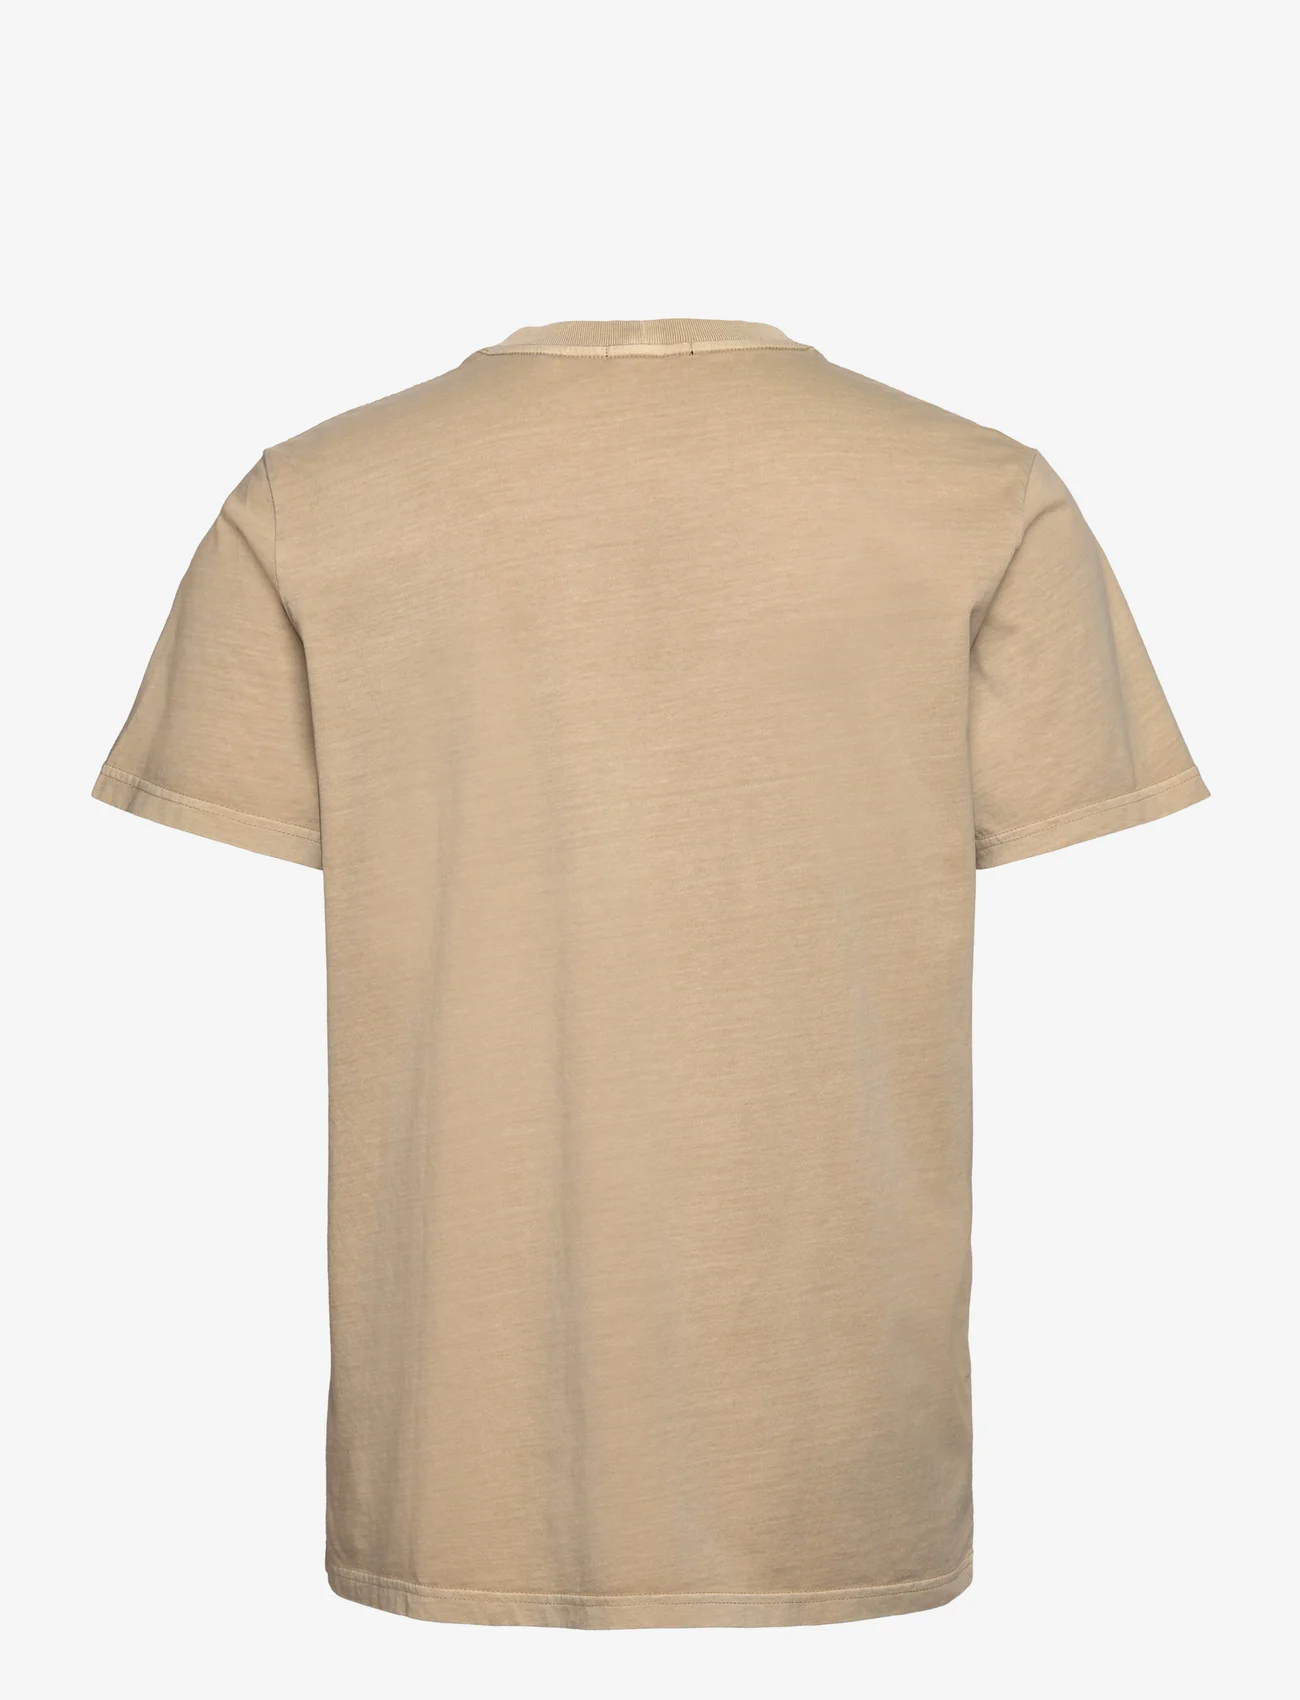 NEUW - ORGANIC NEUW BAND TEE - basic t-shirts - beige - 1